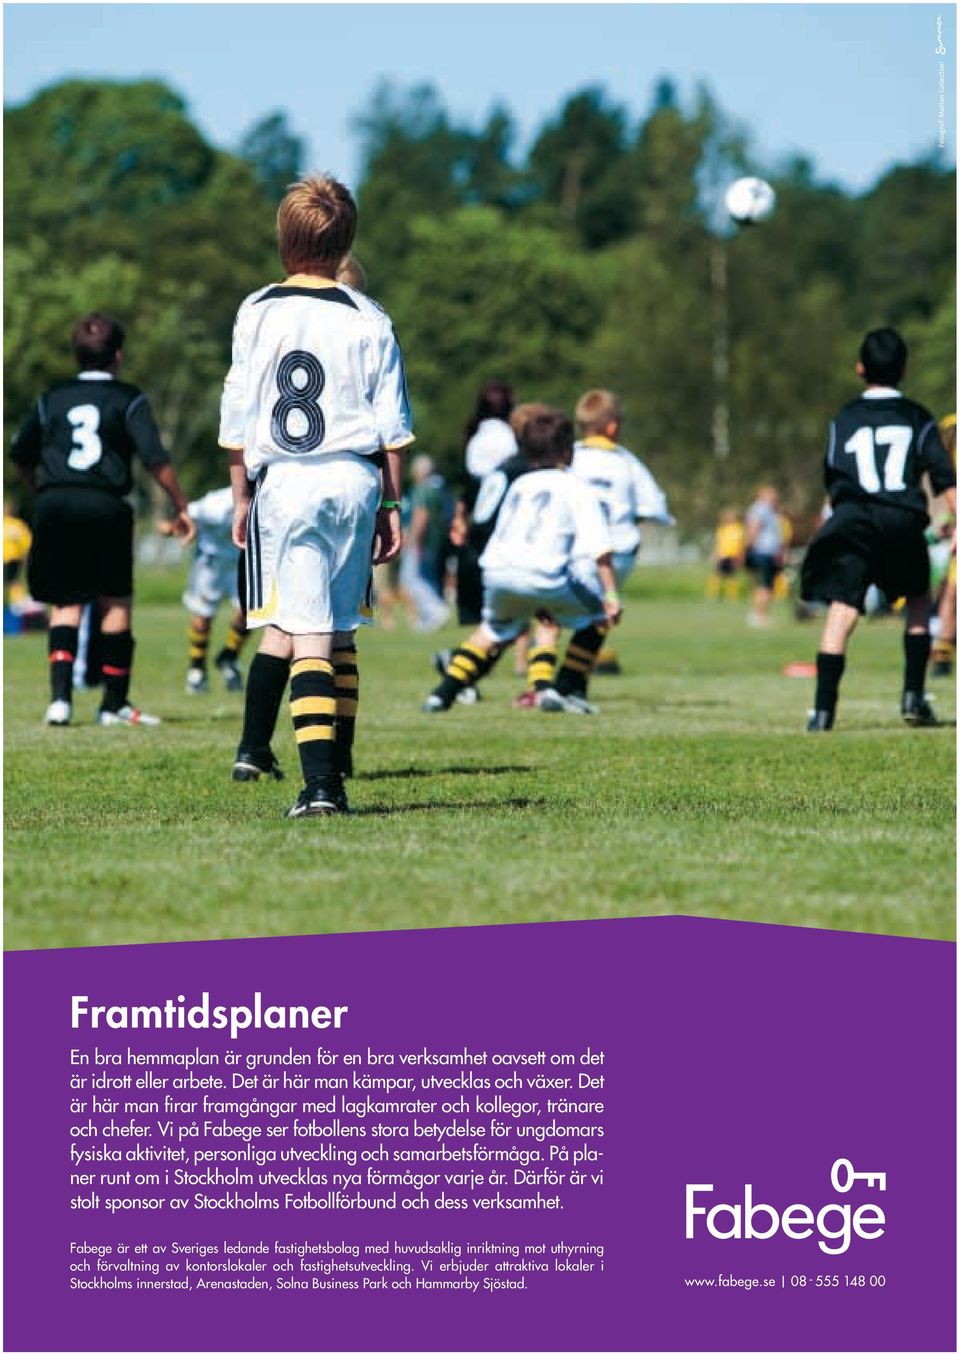 Vi på Fabege ser fotbollens stora betydelse för ungdomars fysiska aktivitet, personliga utveckling och samarbetsförmåga. På planer runt om i Stockholm utvecklas nya förmågor varje år.